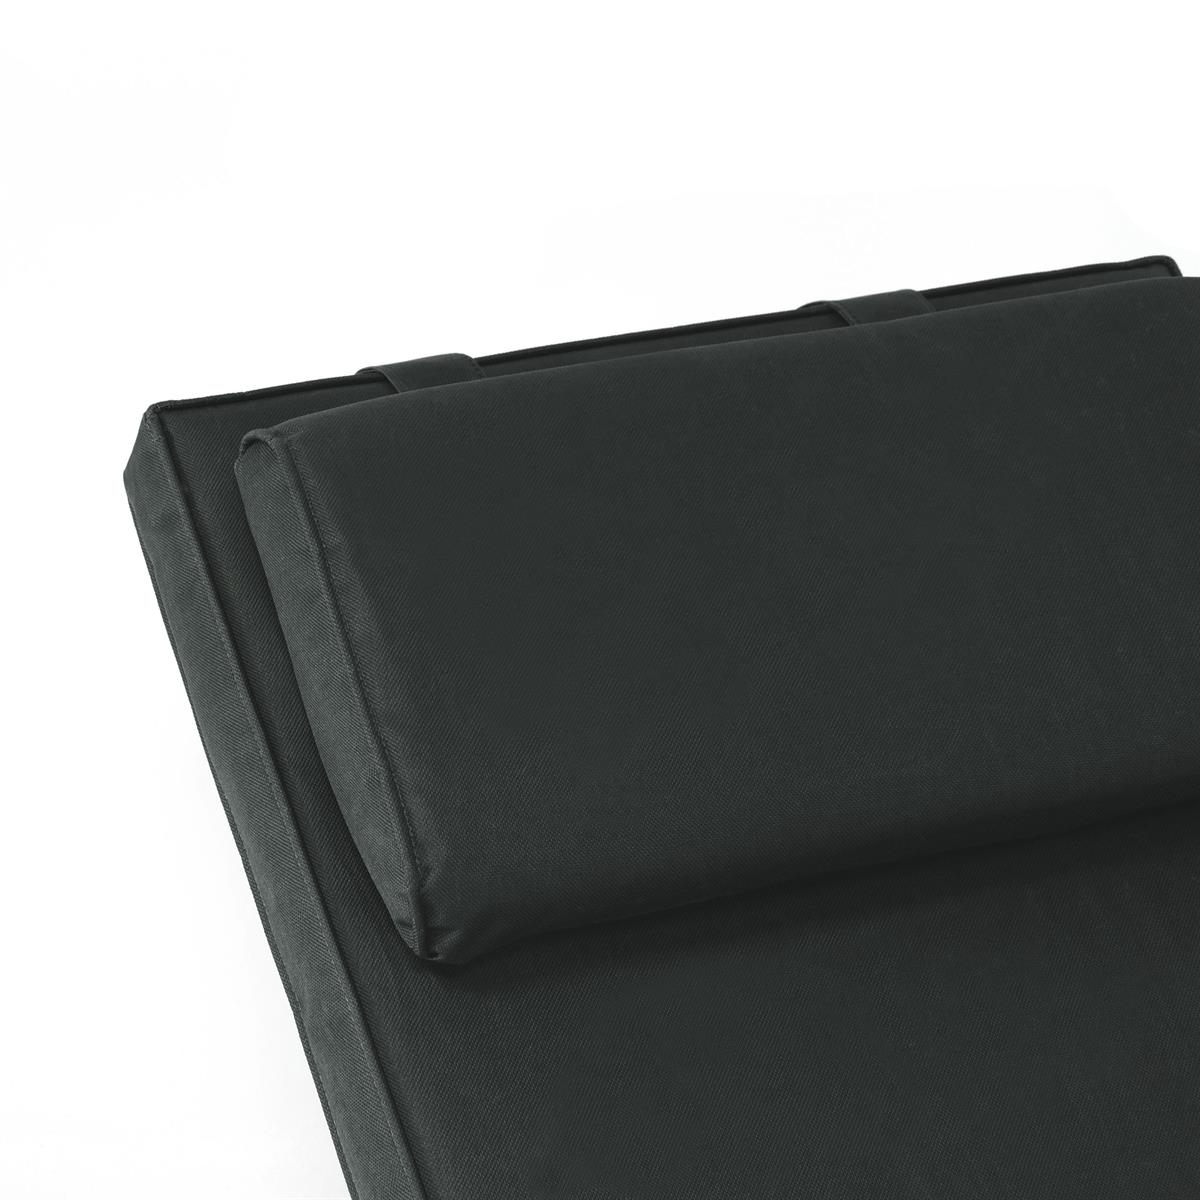 DIVERO 2x Liegenauflage für Deckchair Steamer Liegestuhl-Auflage Polster grau 